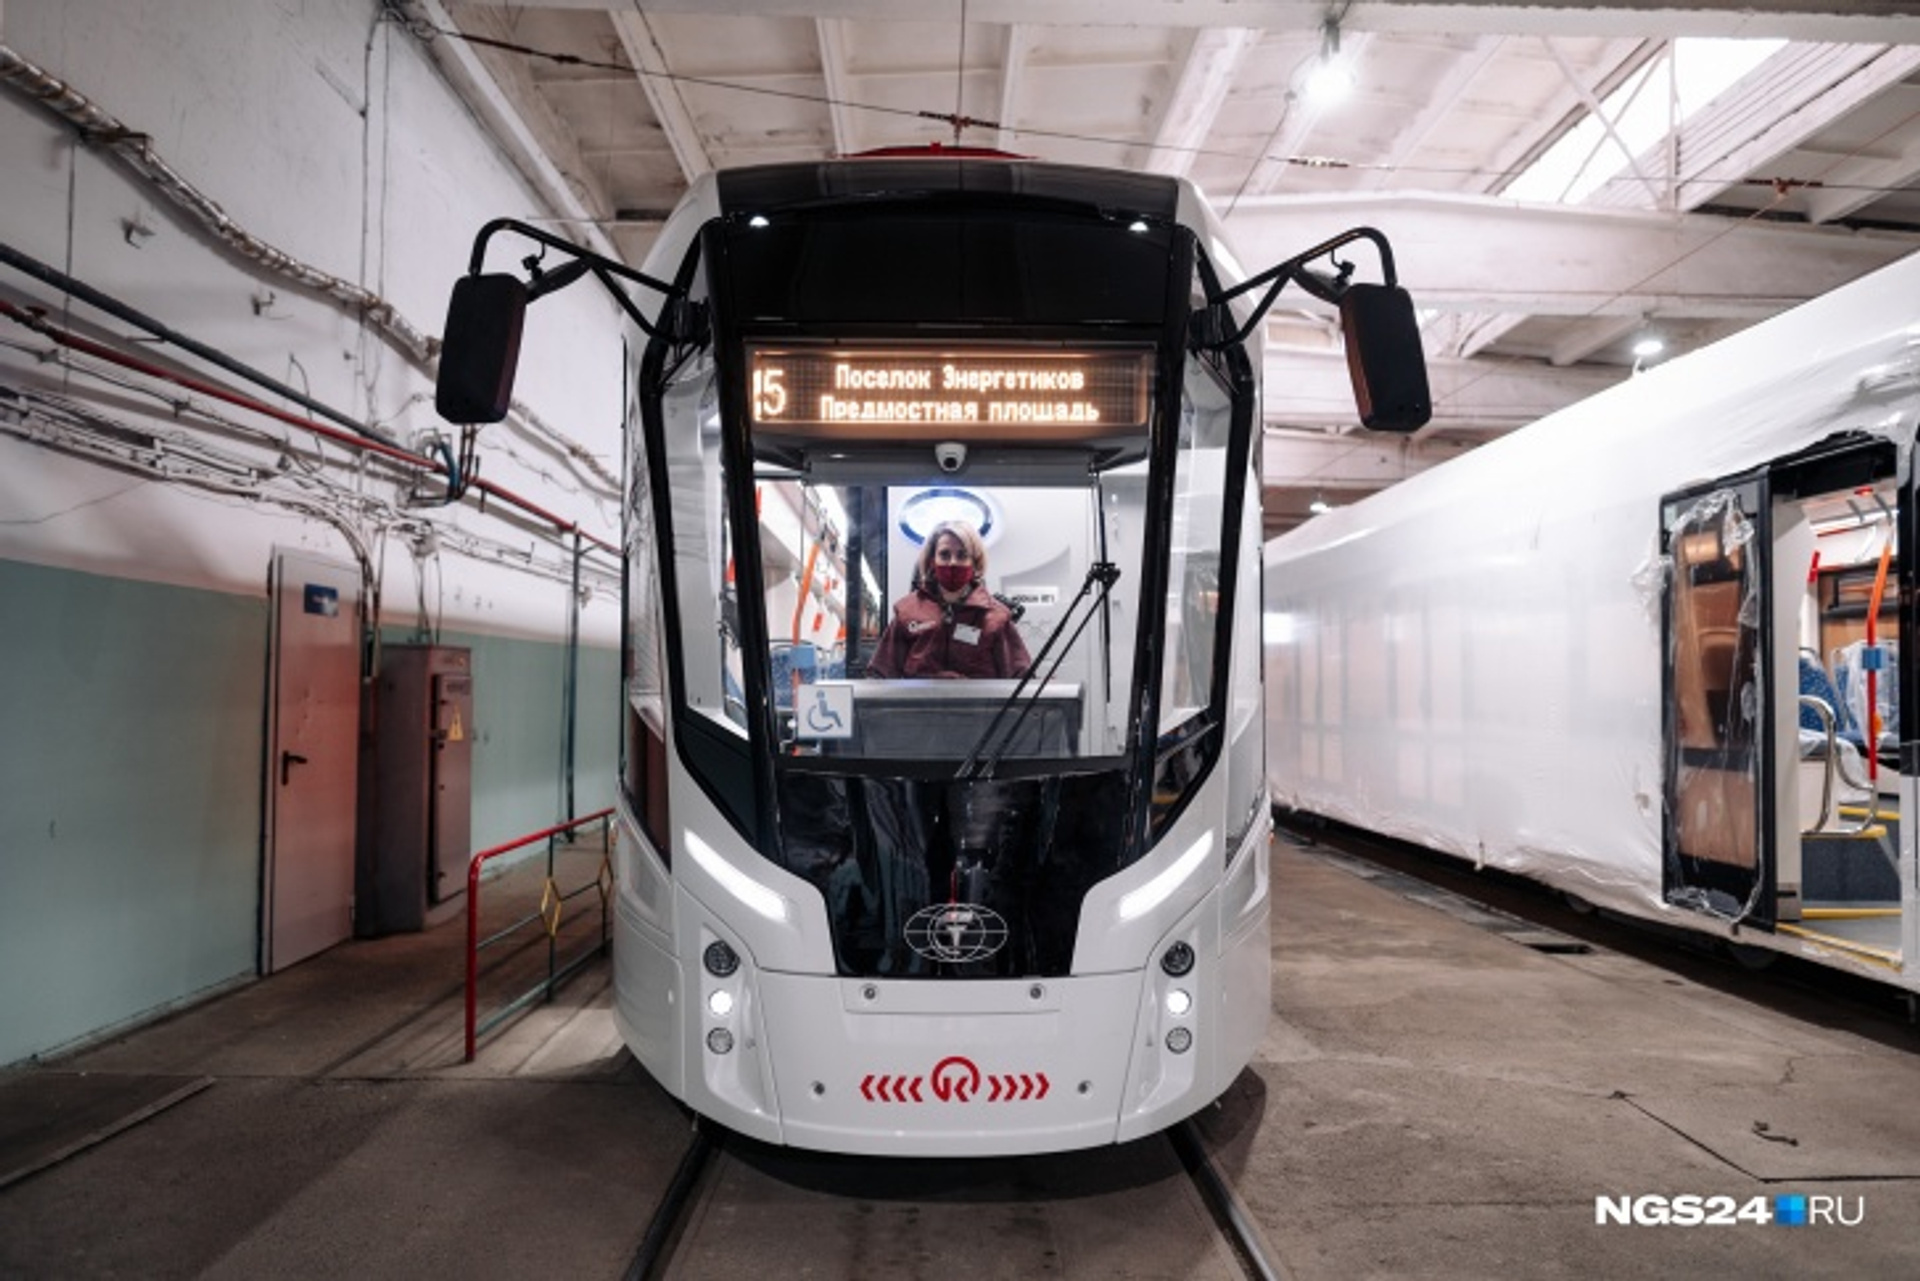 Власти Красноярска подписали соглашение о передаче трамвайной сети москвичам